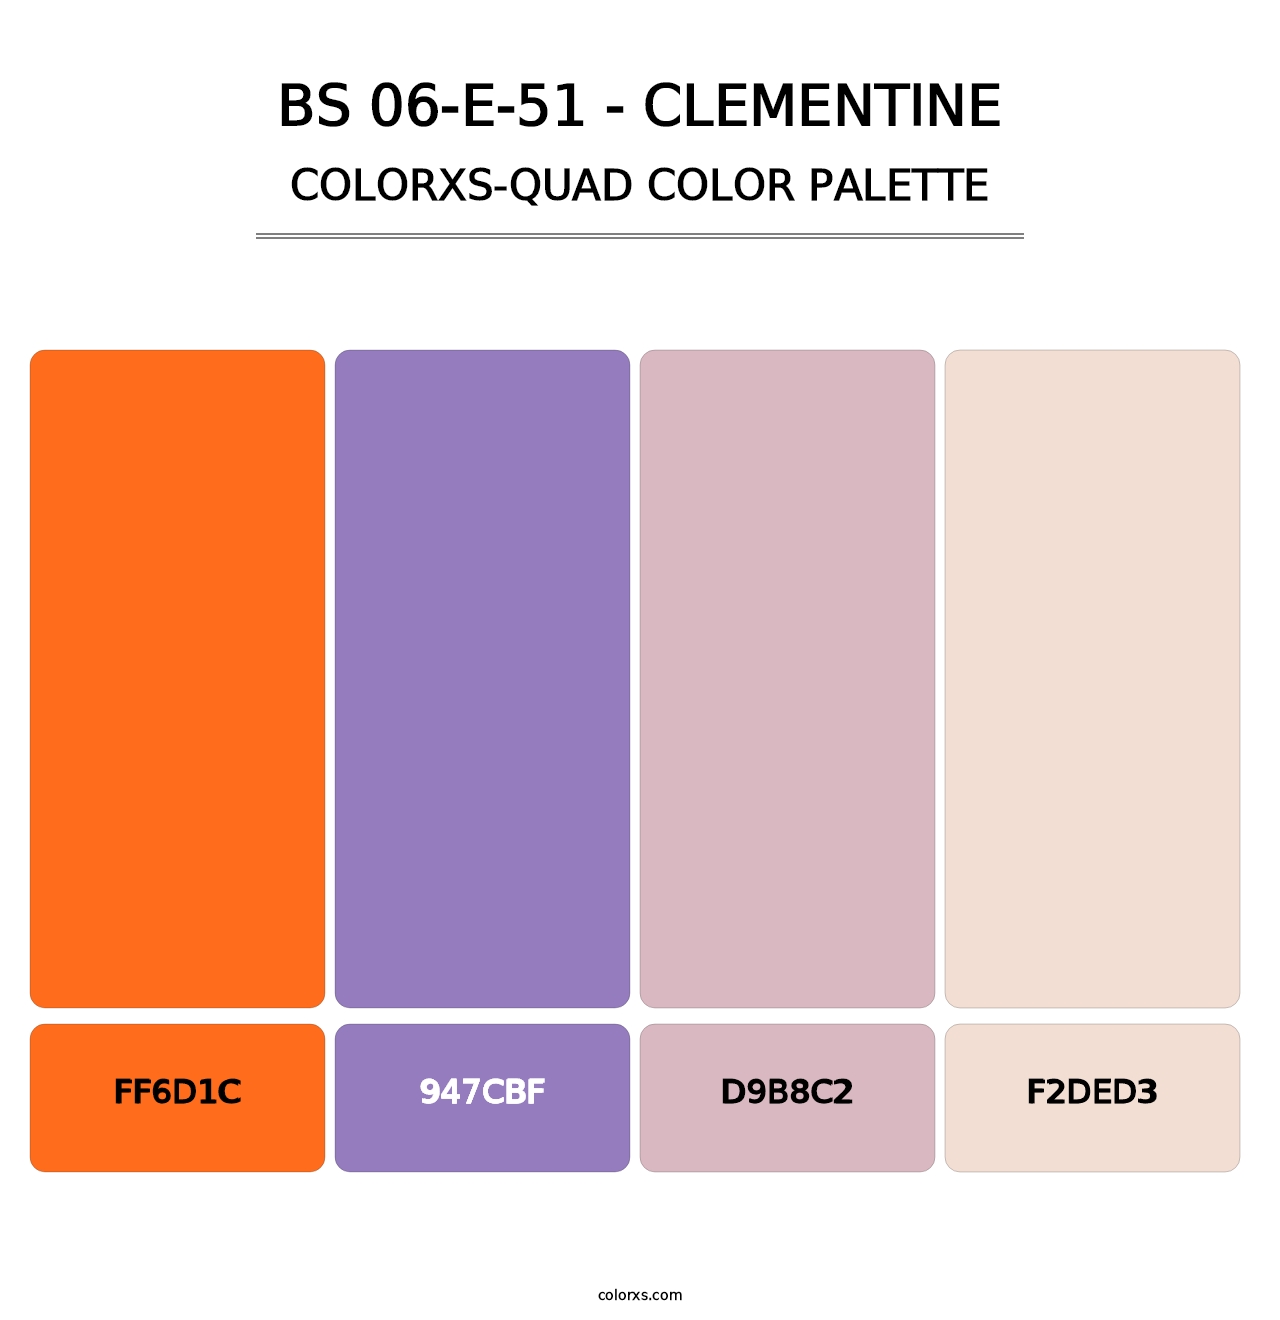 BS 06-E-51 - Clementine - Colorxs Quad Palette